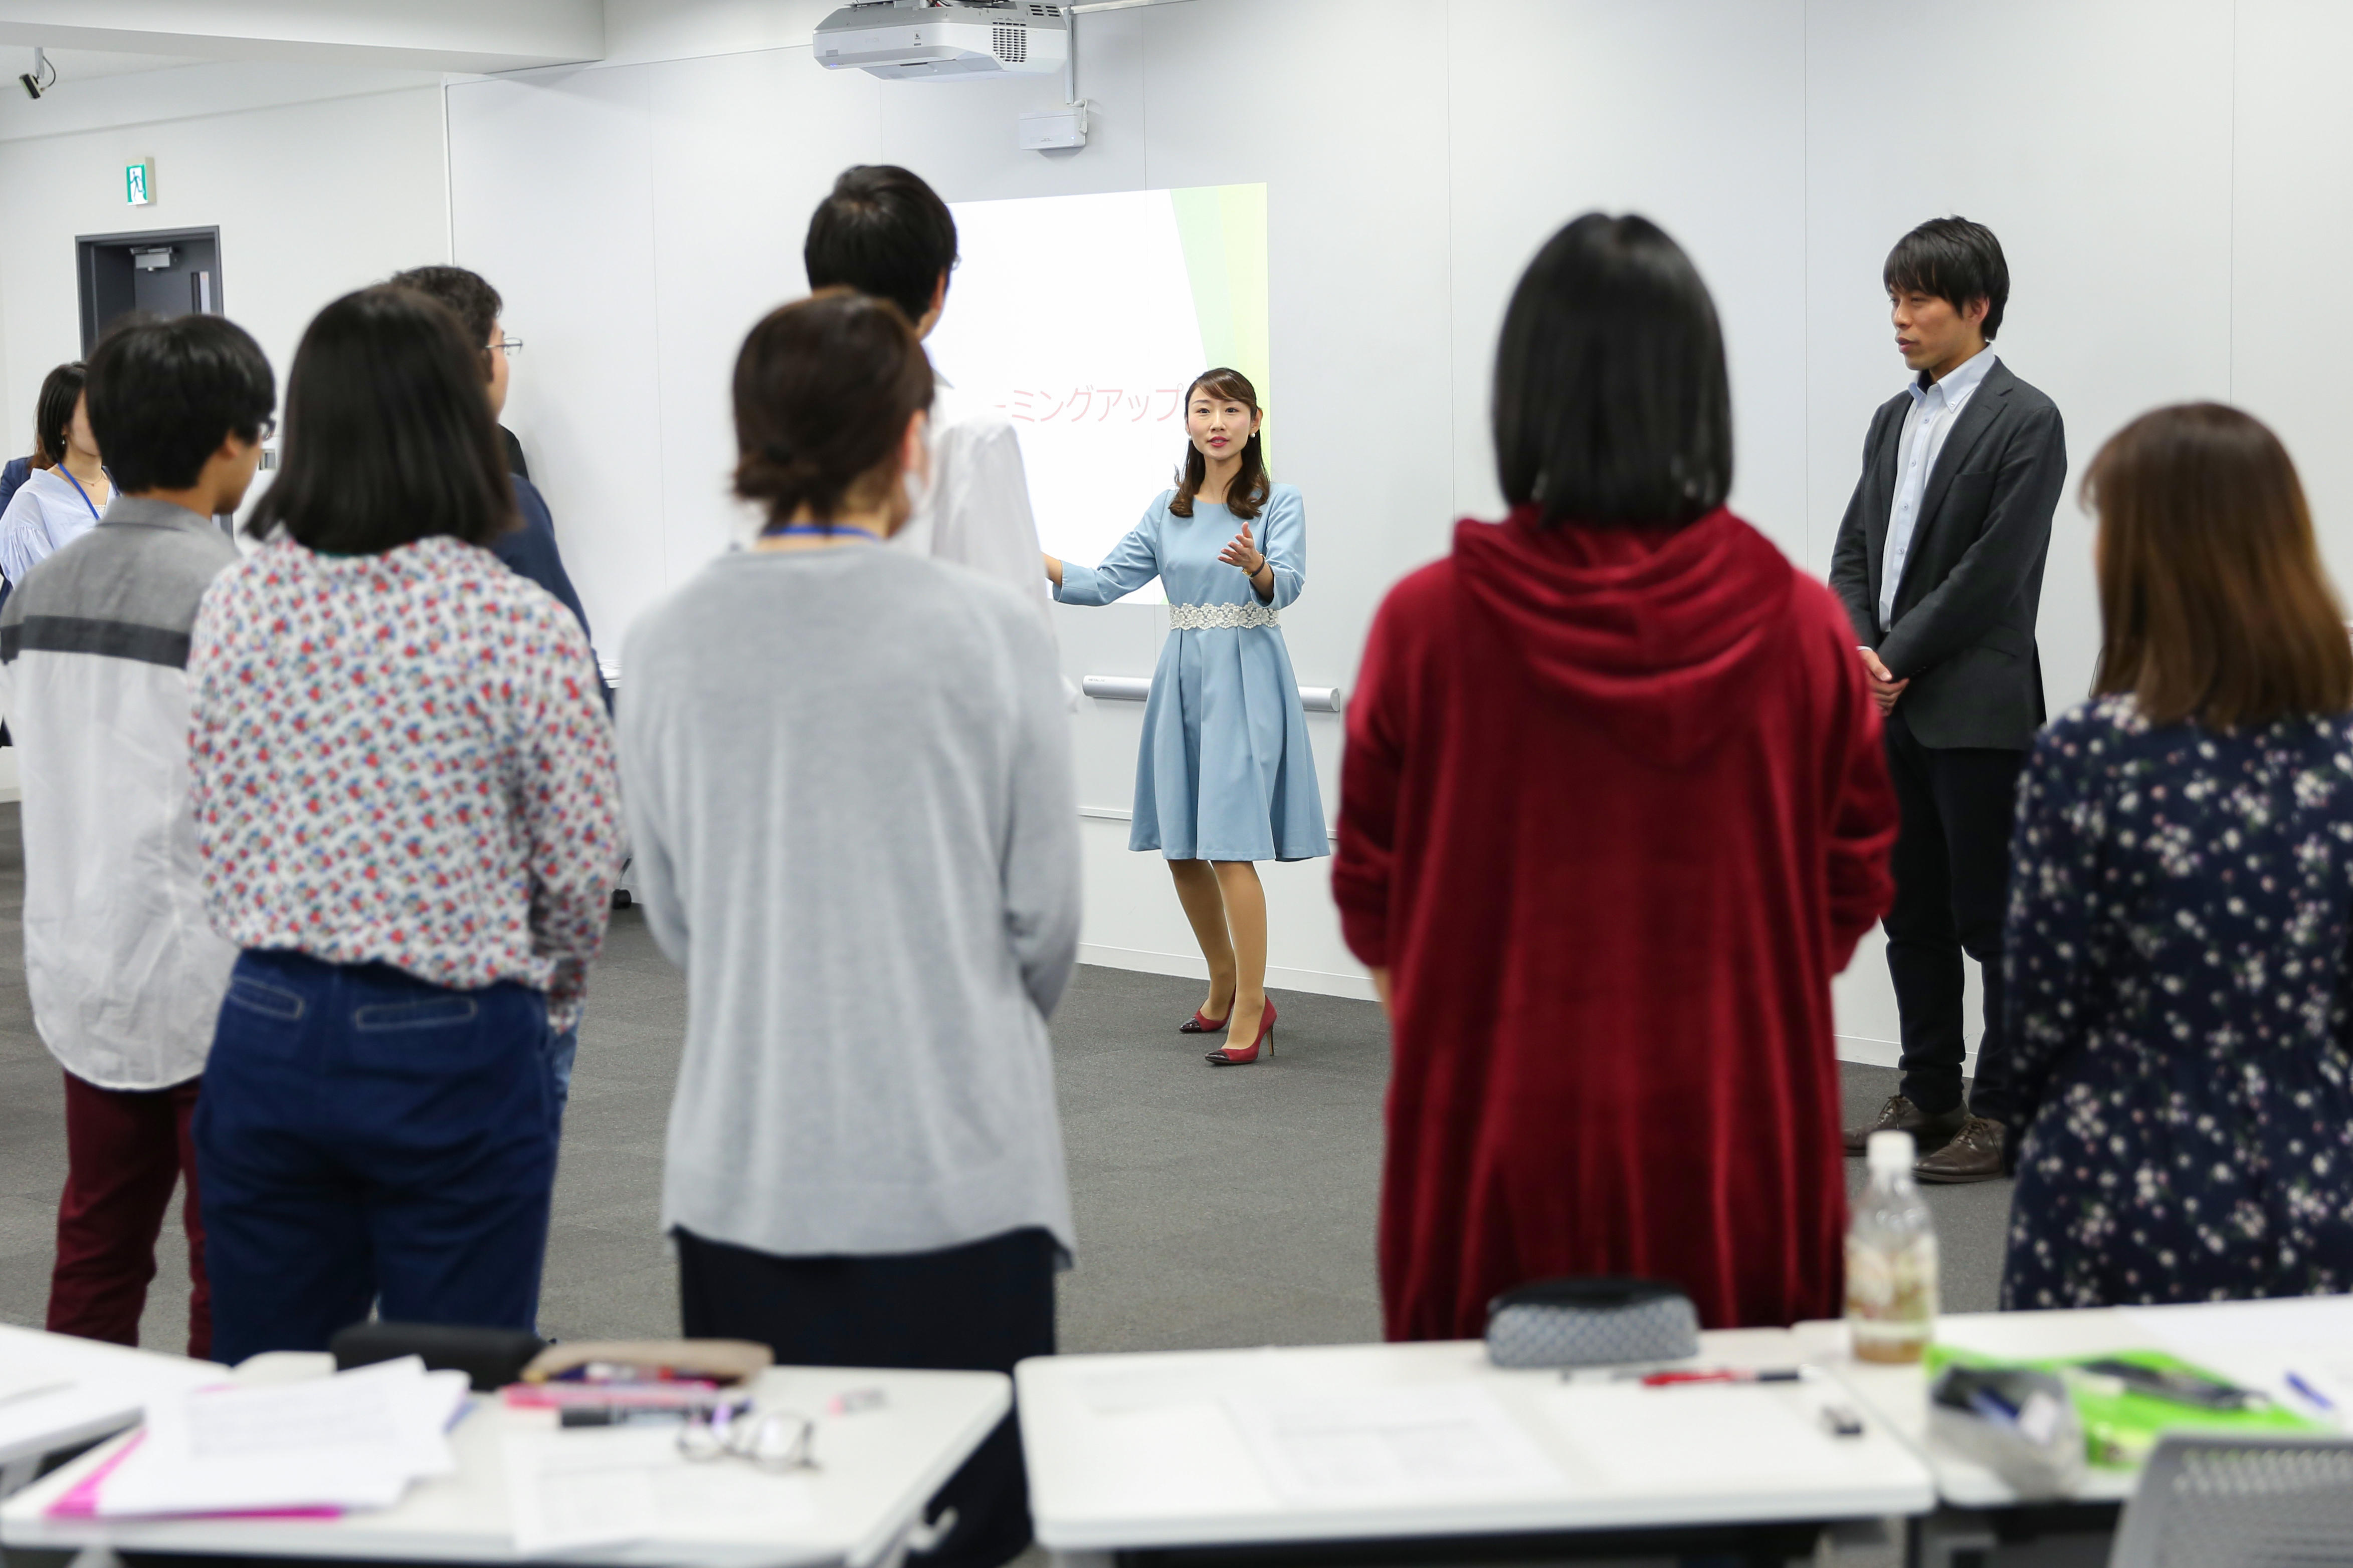 教職を目指す人のための「新聞教育プログラム」を開講 -- 東京理科大学